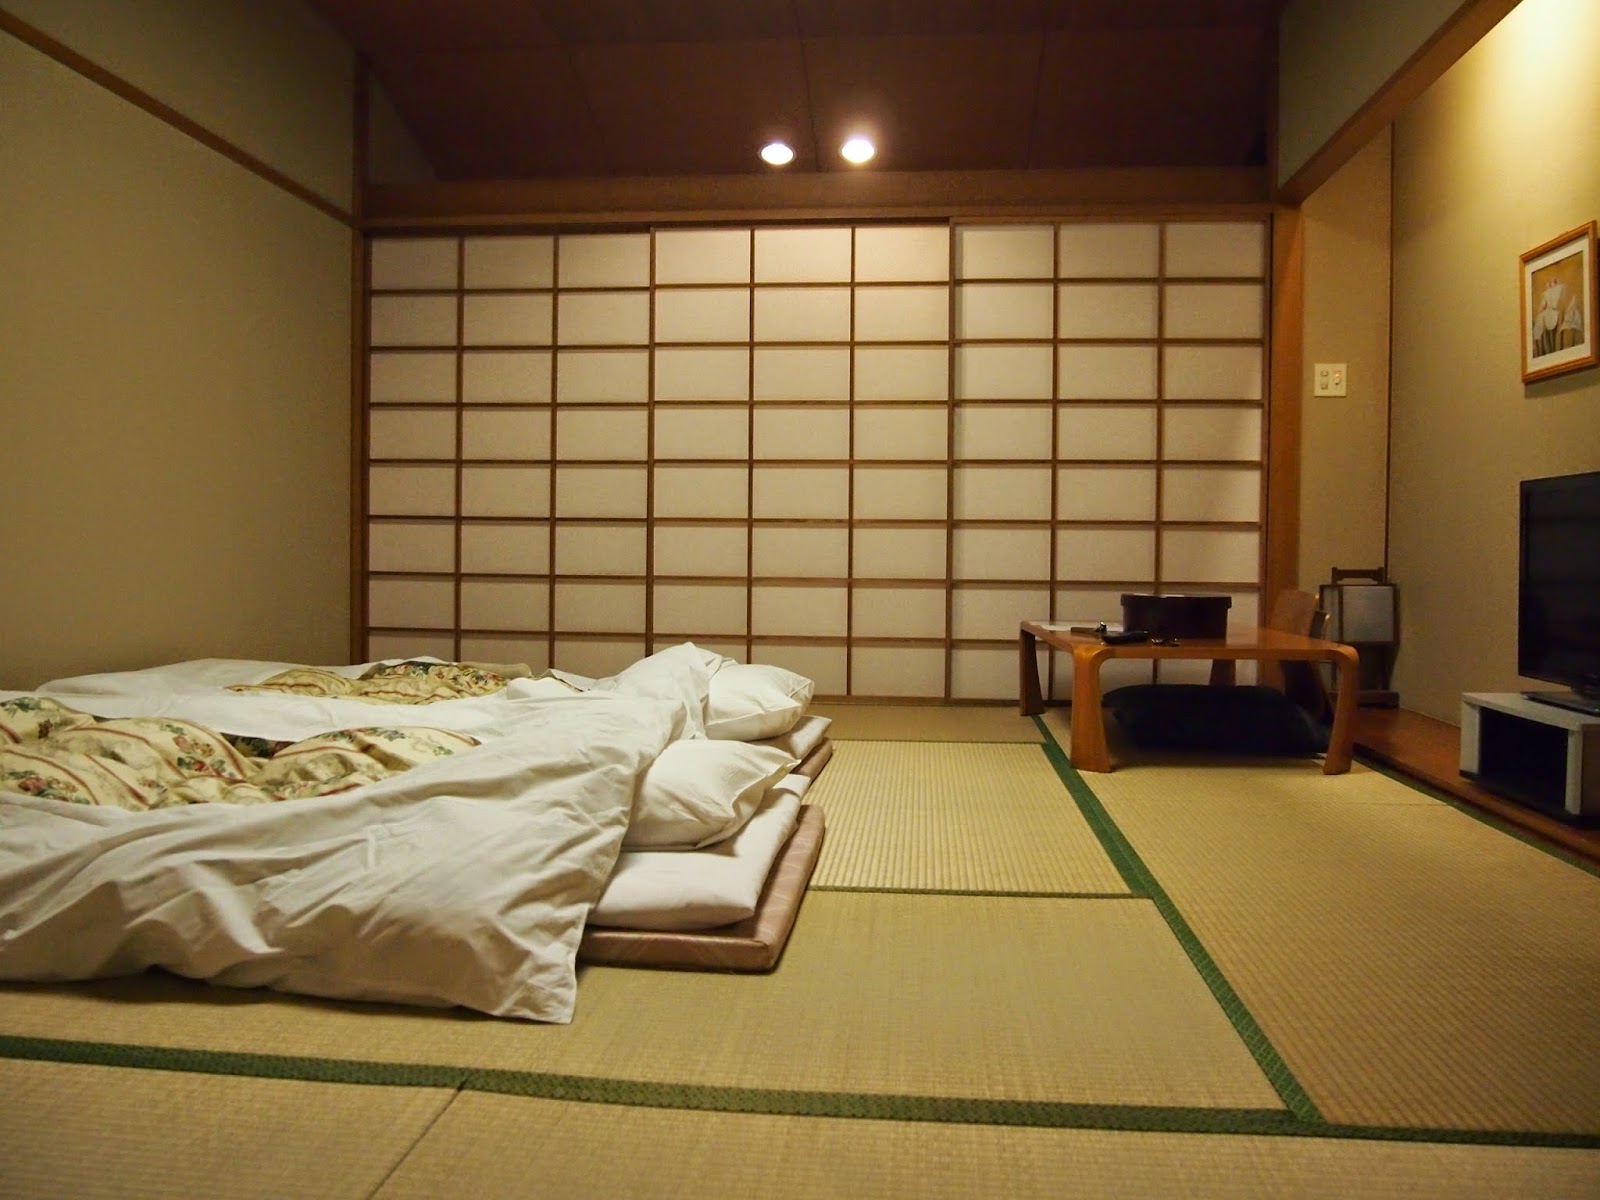 Foto interior del dormitori d'estil japonès